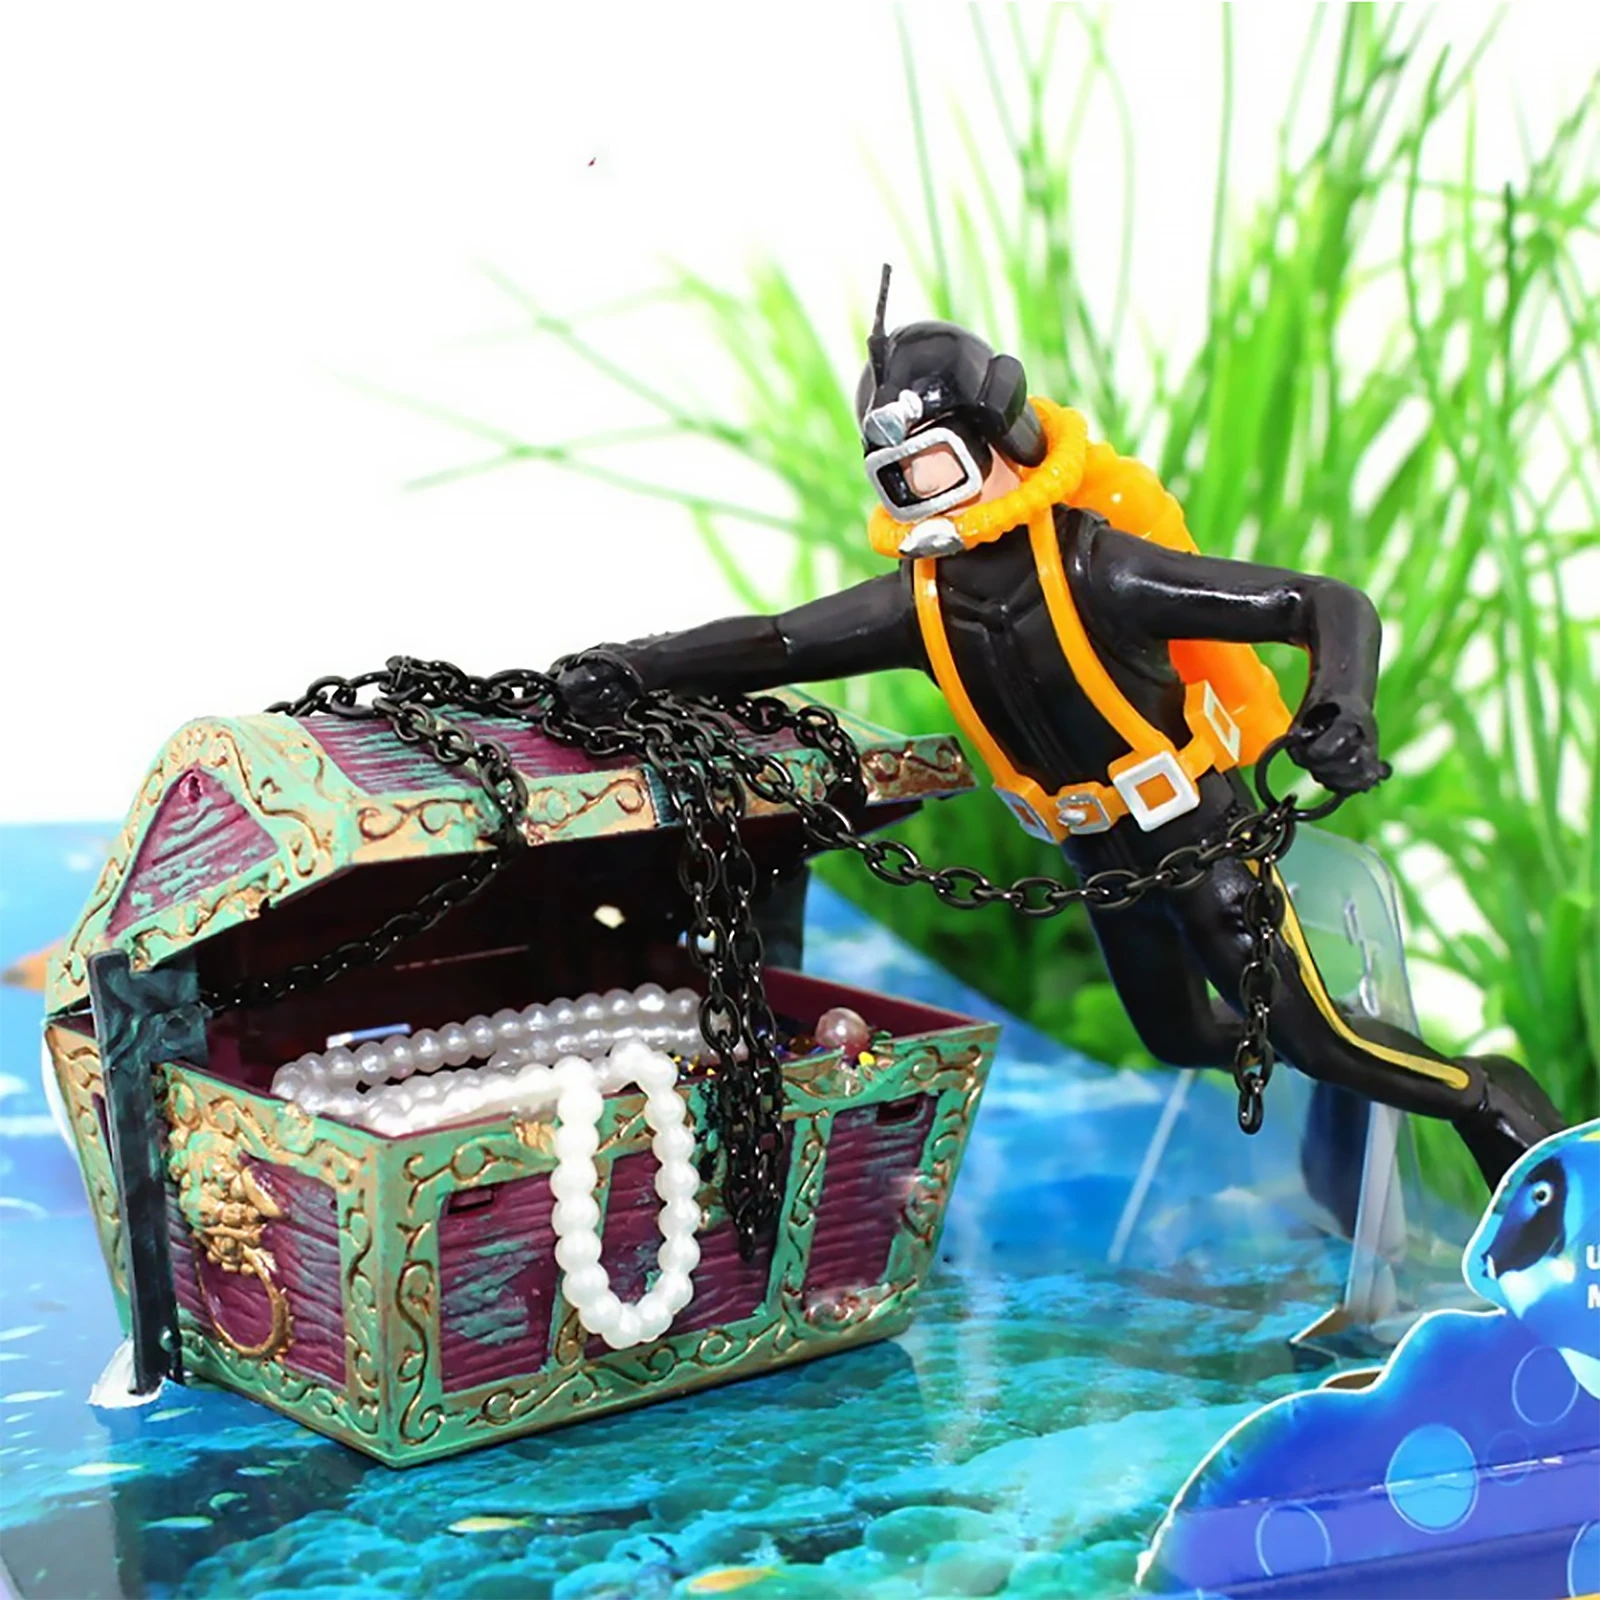 Frogman Diver Treasure Chest Shaped Action Air Ornament Fish Tank Aquarium Decor 